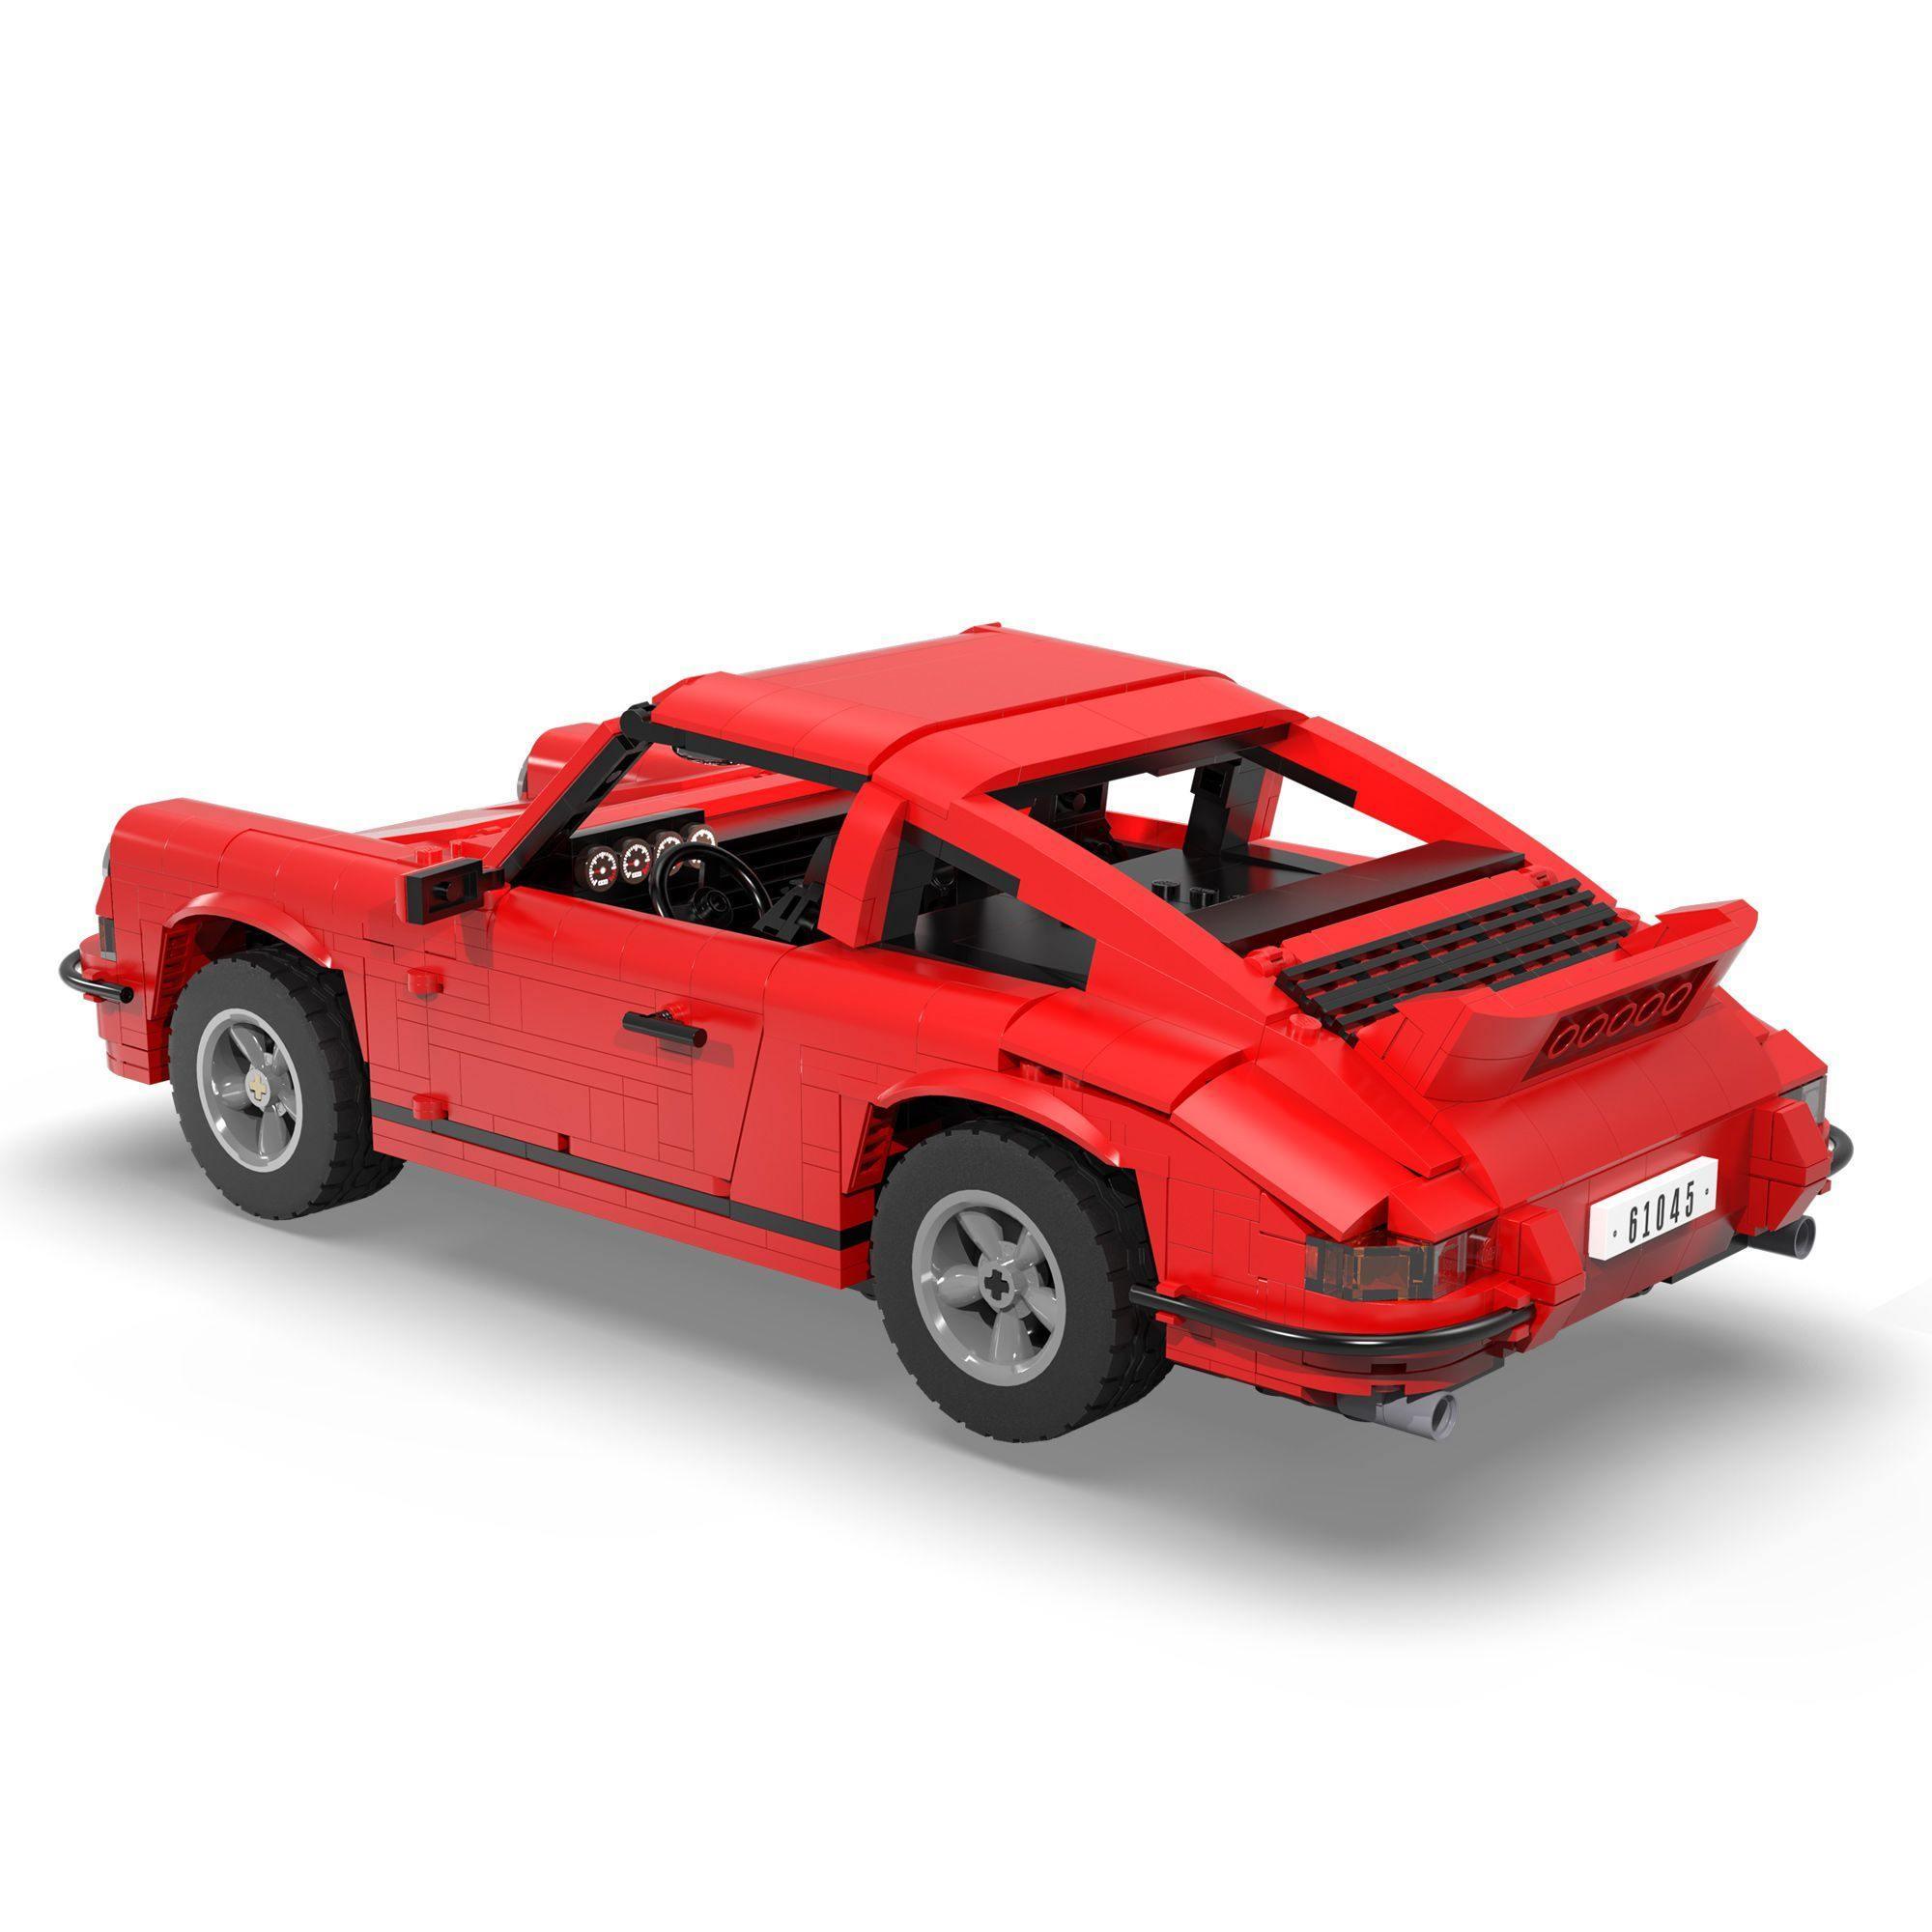 Porche 911 Classic s set, compatible with Lego